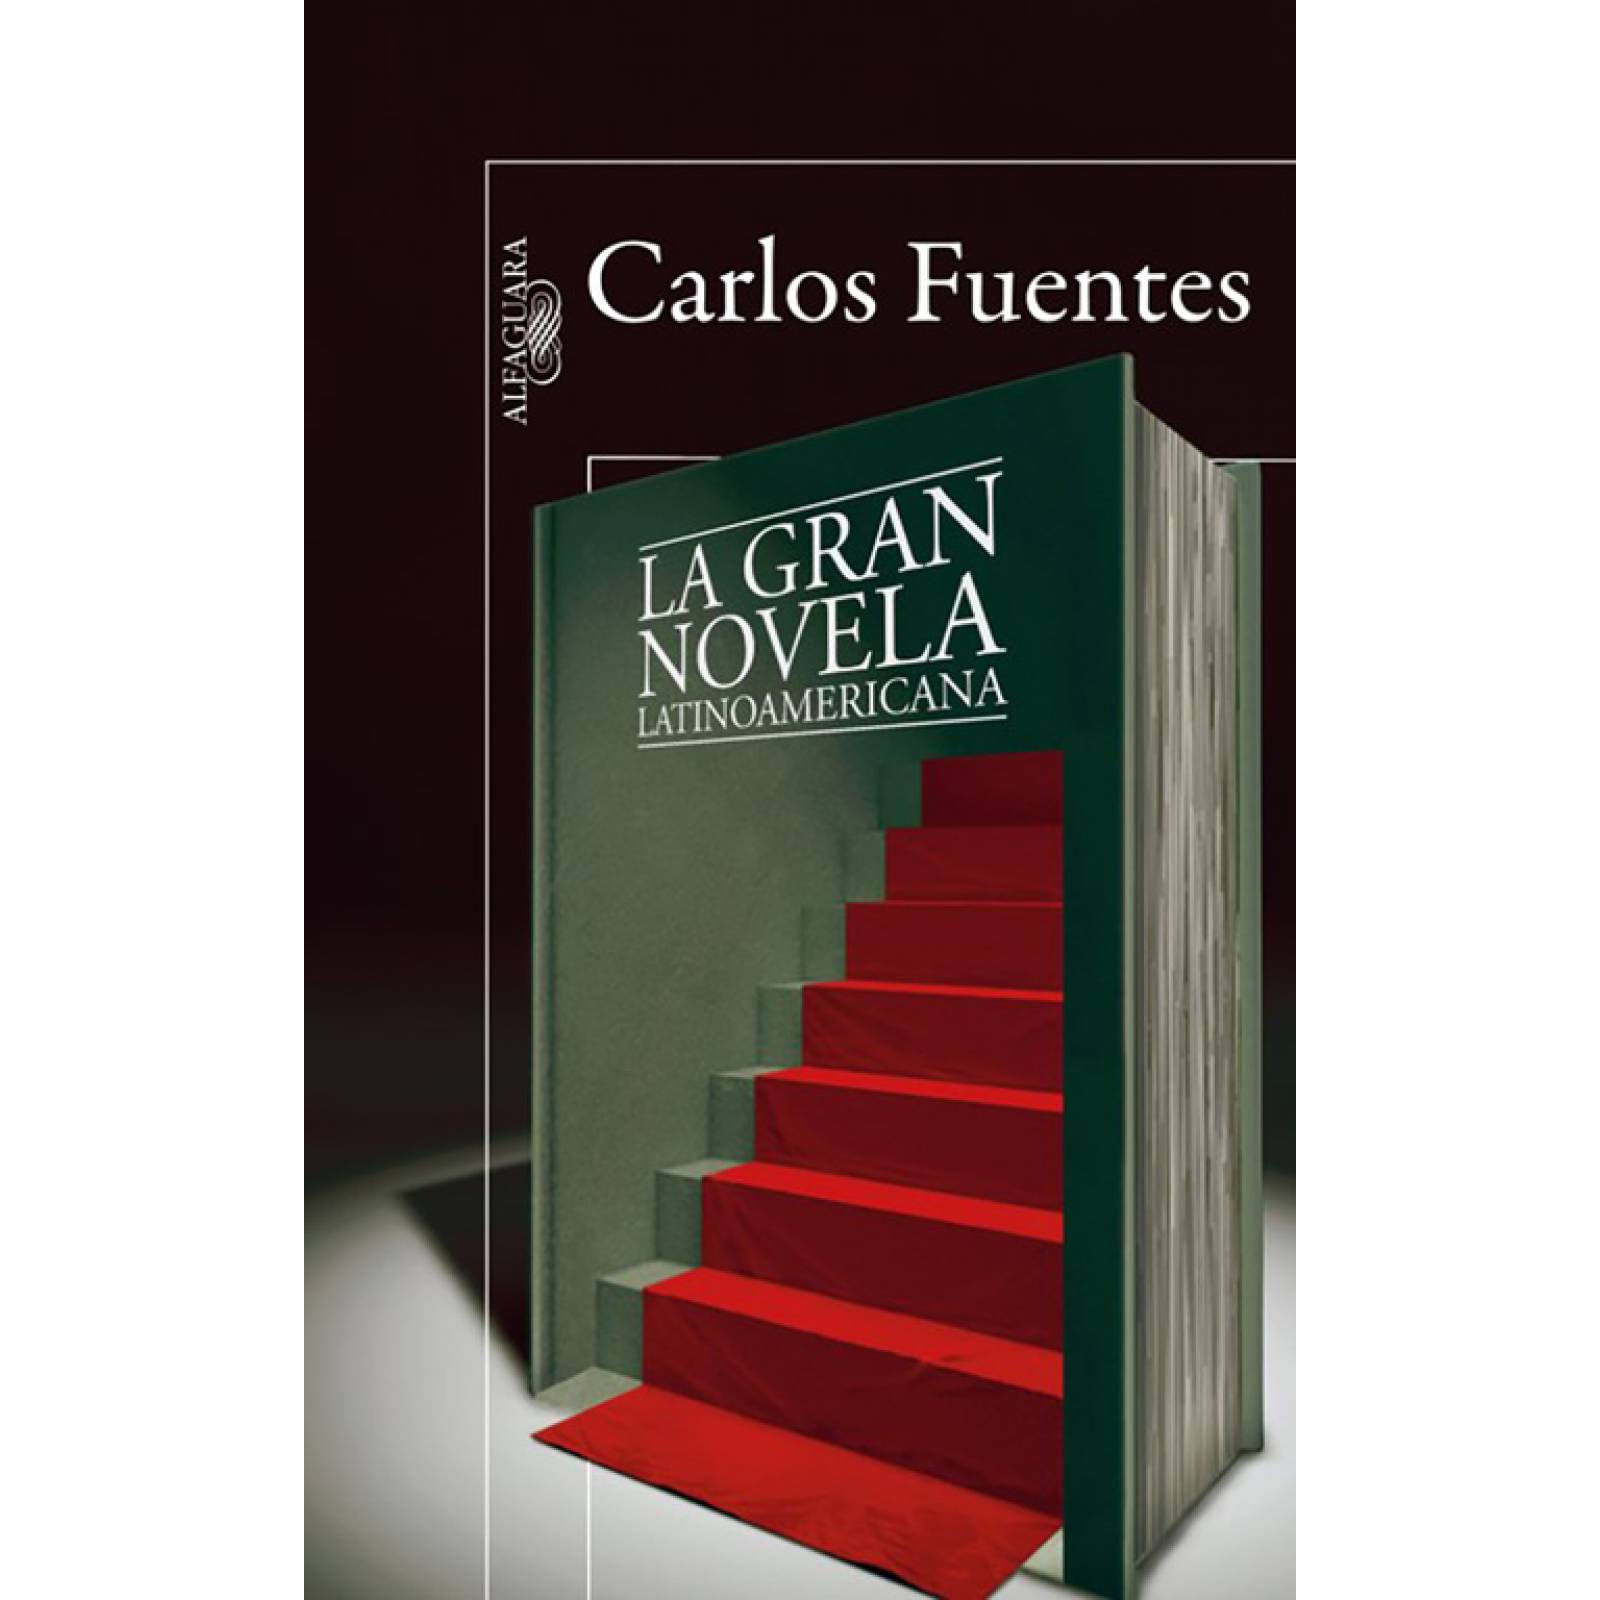 La gran novela latinoamericanaAutorCarlos Fuentes